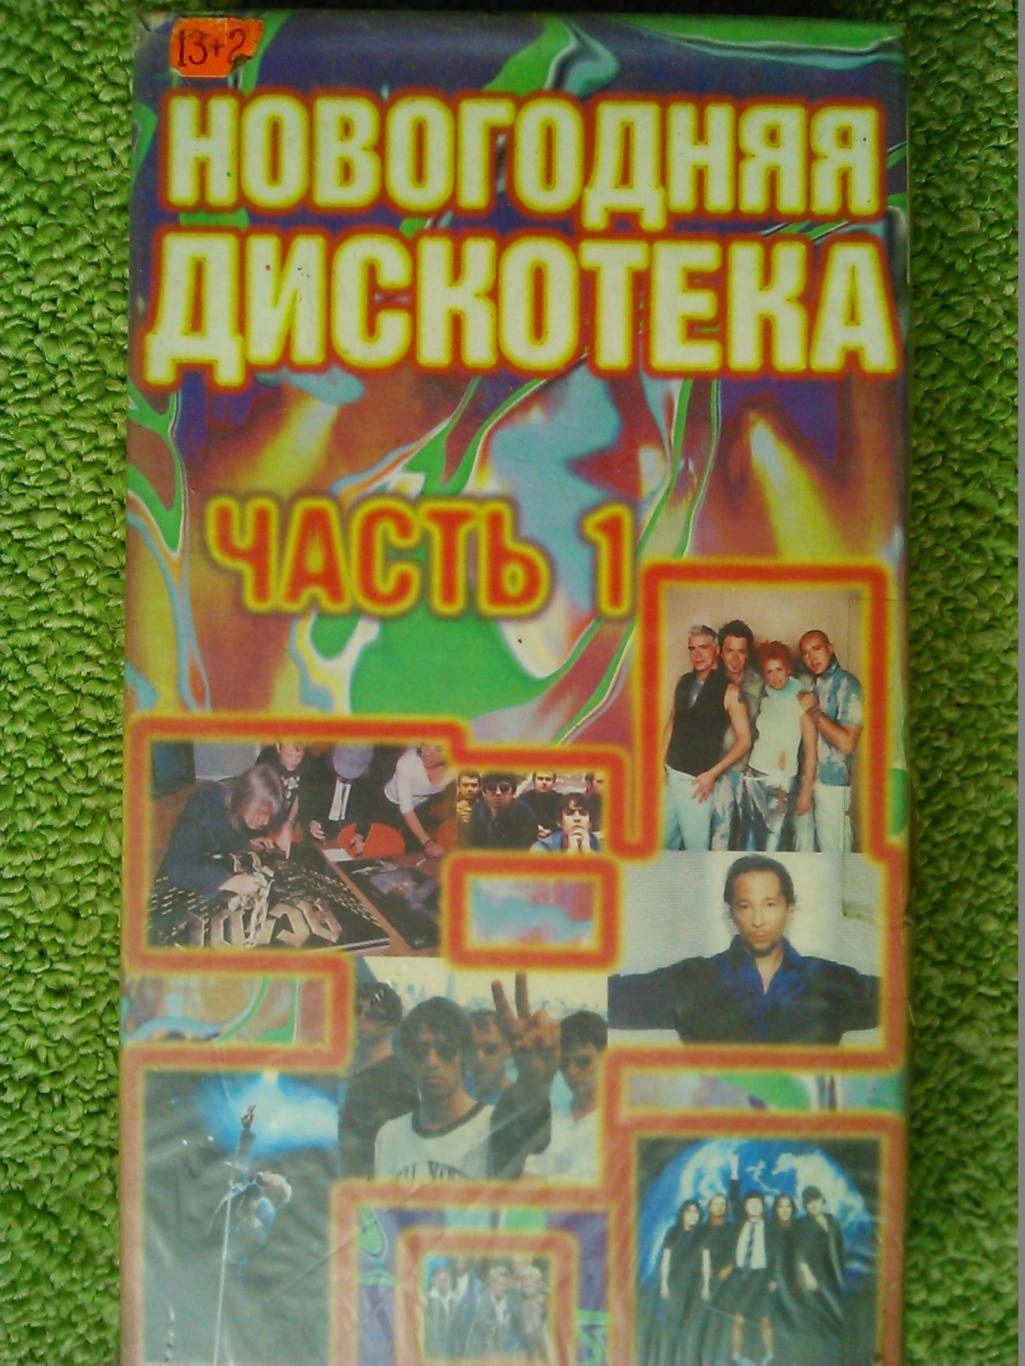 видеокассета. VHS-НОВОГОДНЯЯ ДИСКОТЕКА. Cб. популярной зарубежной музыки. 1999 .